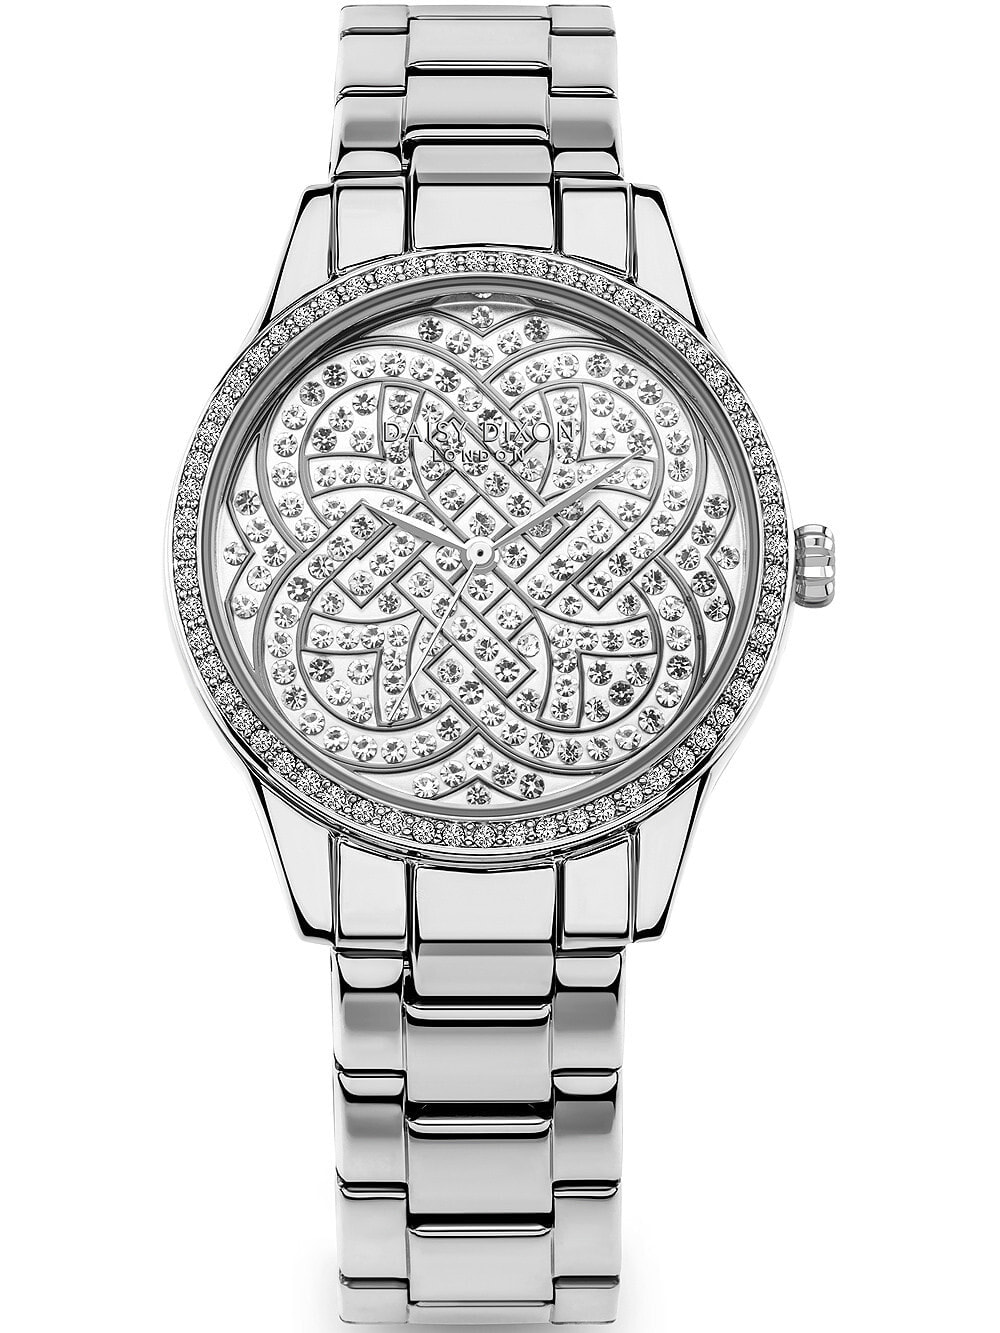 Женские наручные кварцевые часы DAISY DIXON  ремешок нержавеющая сталь, базель и циферблат  декорирован камнями.